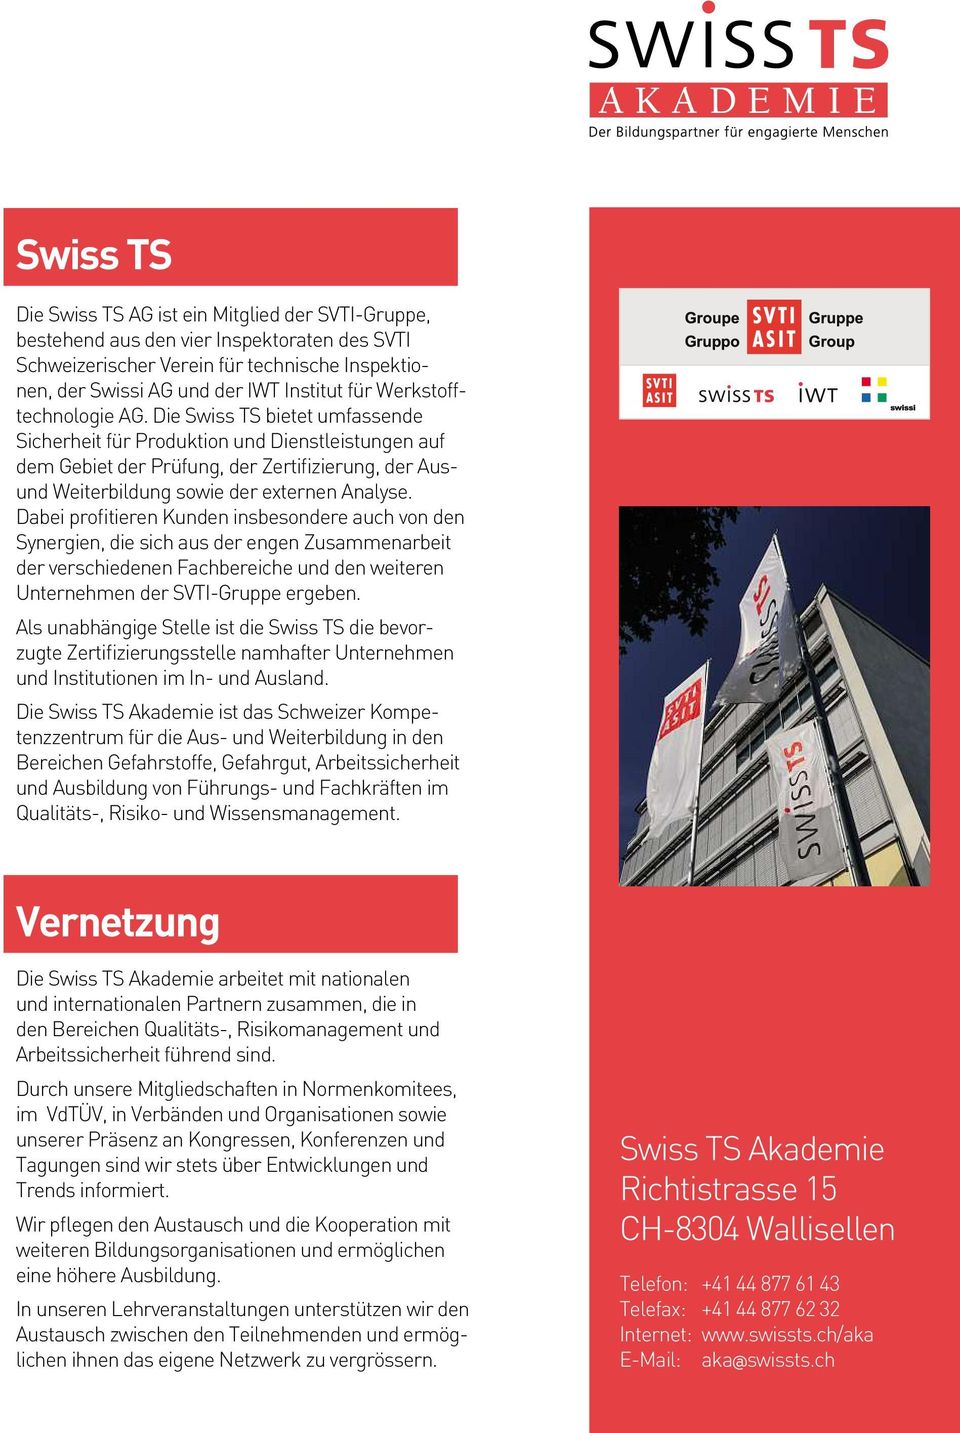 Die Swiss TS bietet umfassende Sicherheit für Produktion und Dienstleistungen auf dem Gebiet der Prüfung, der Zertifizierung, der Ausund Weiterbildung sowie der externen Analyse.